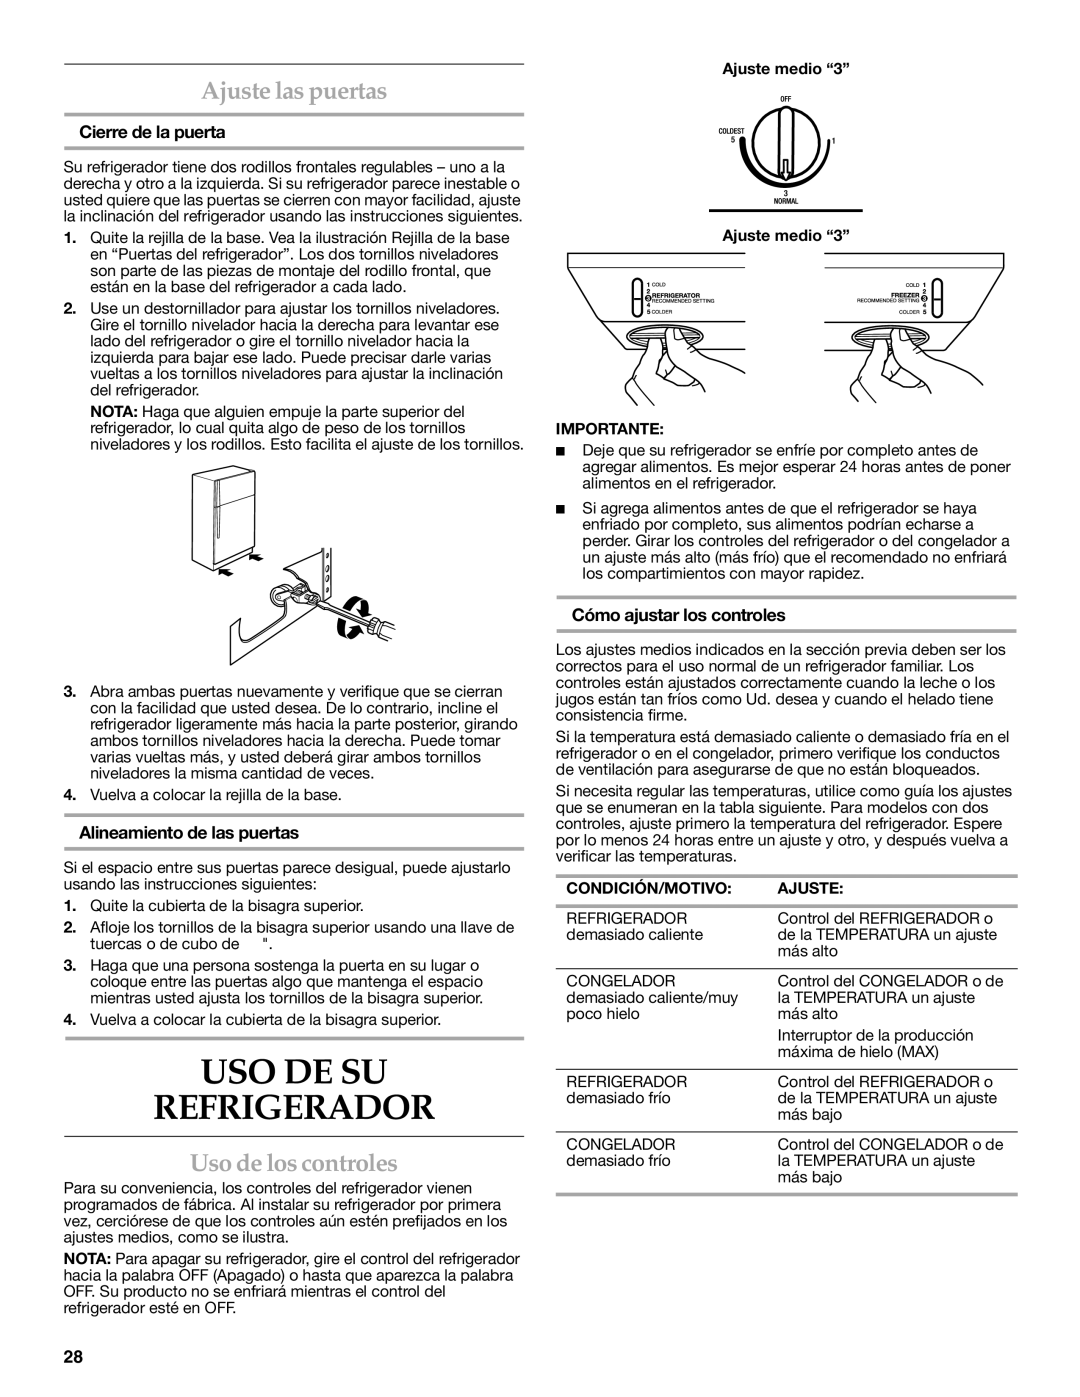 KitchenAid KTRC22KVSS installation instructions USO DE SU Refrigerador, Ajuste las puertas, Uso de los controles 